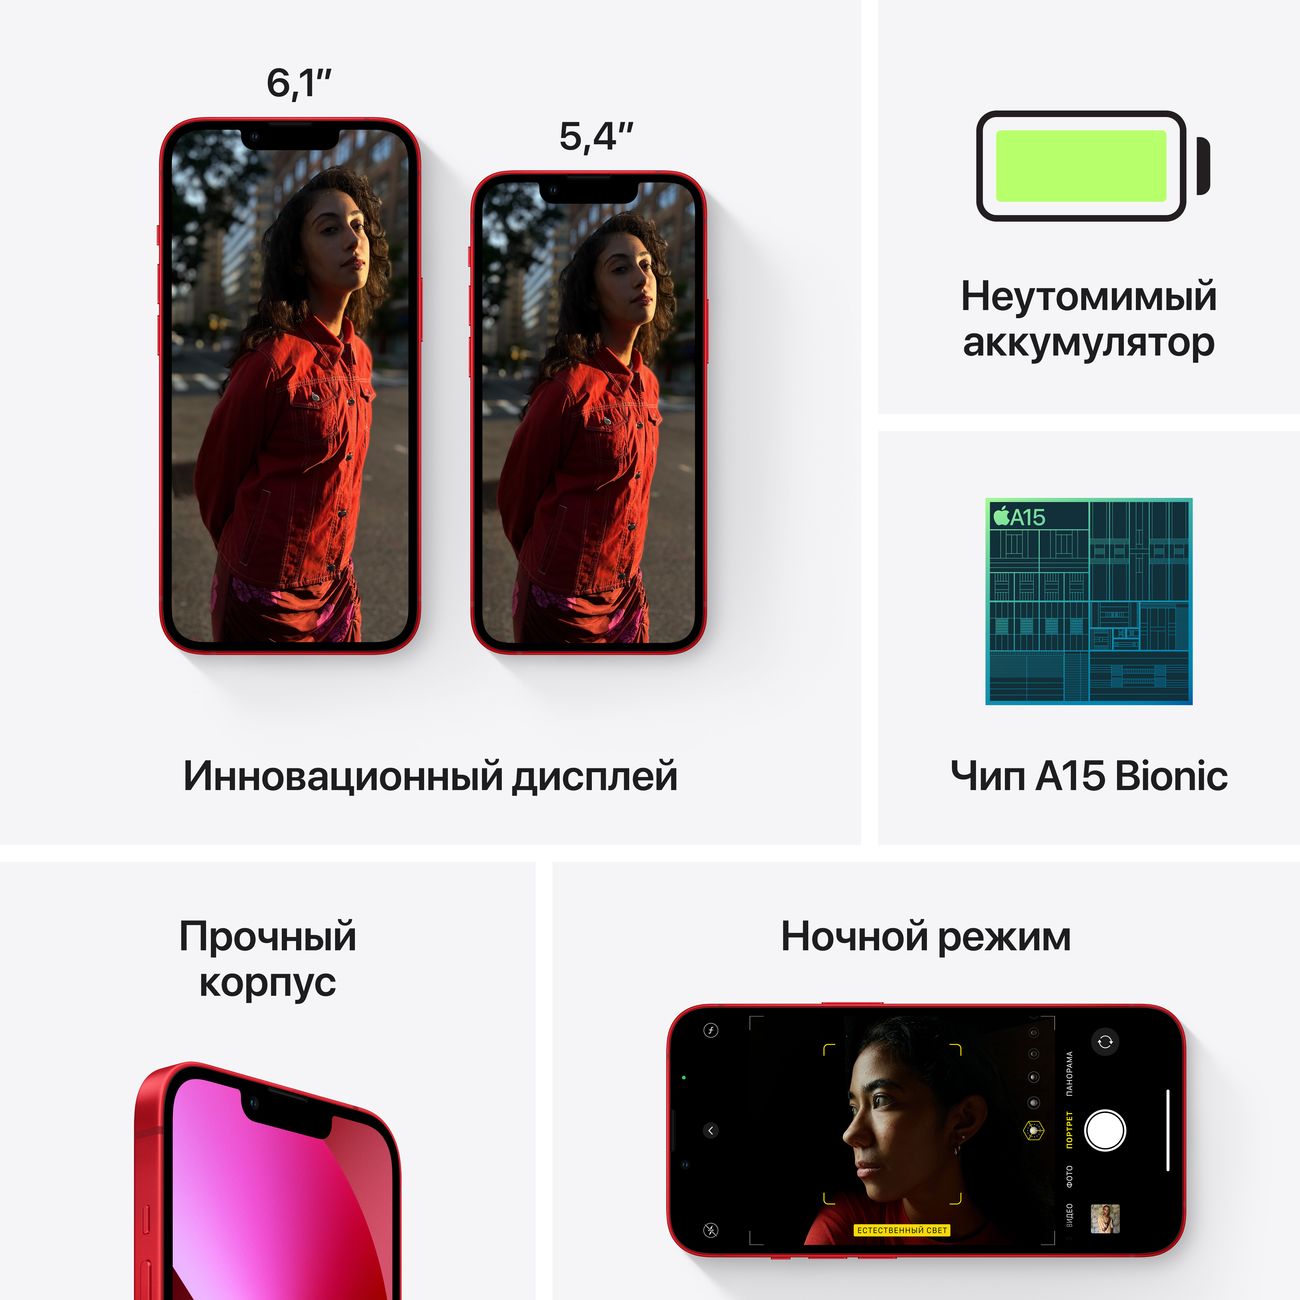 Купить смартфон apple iphone 13 mini 256gb midnight Apple iPhone 13 mini в официальном магазине Apple, Samsung, Xiaomi. iPixel.ru Купить, заказ, кредит, рассрочка, отзывы,  характеристики, цена,  фотографии, в подарок.